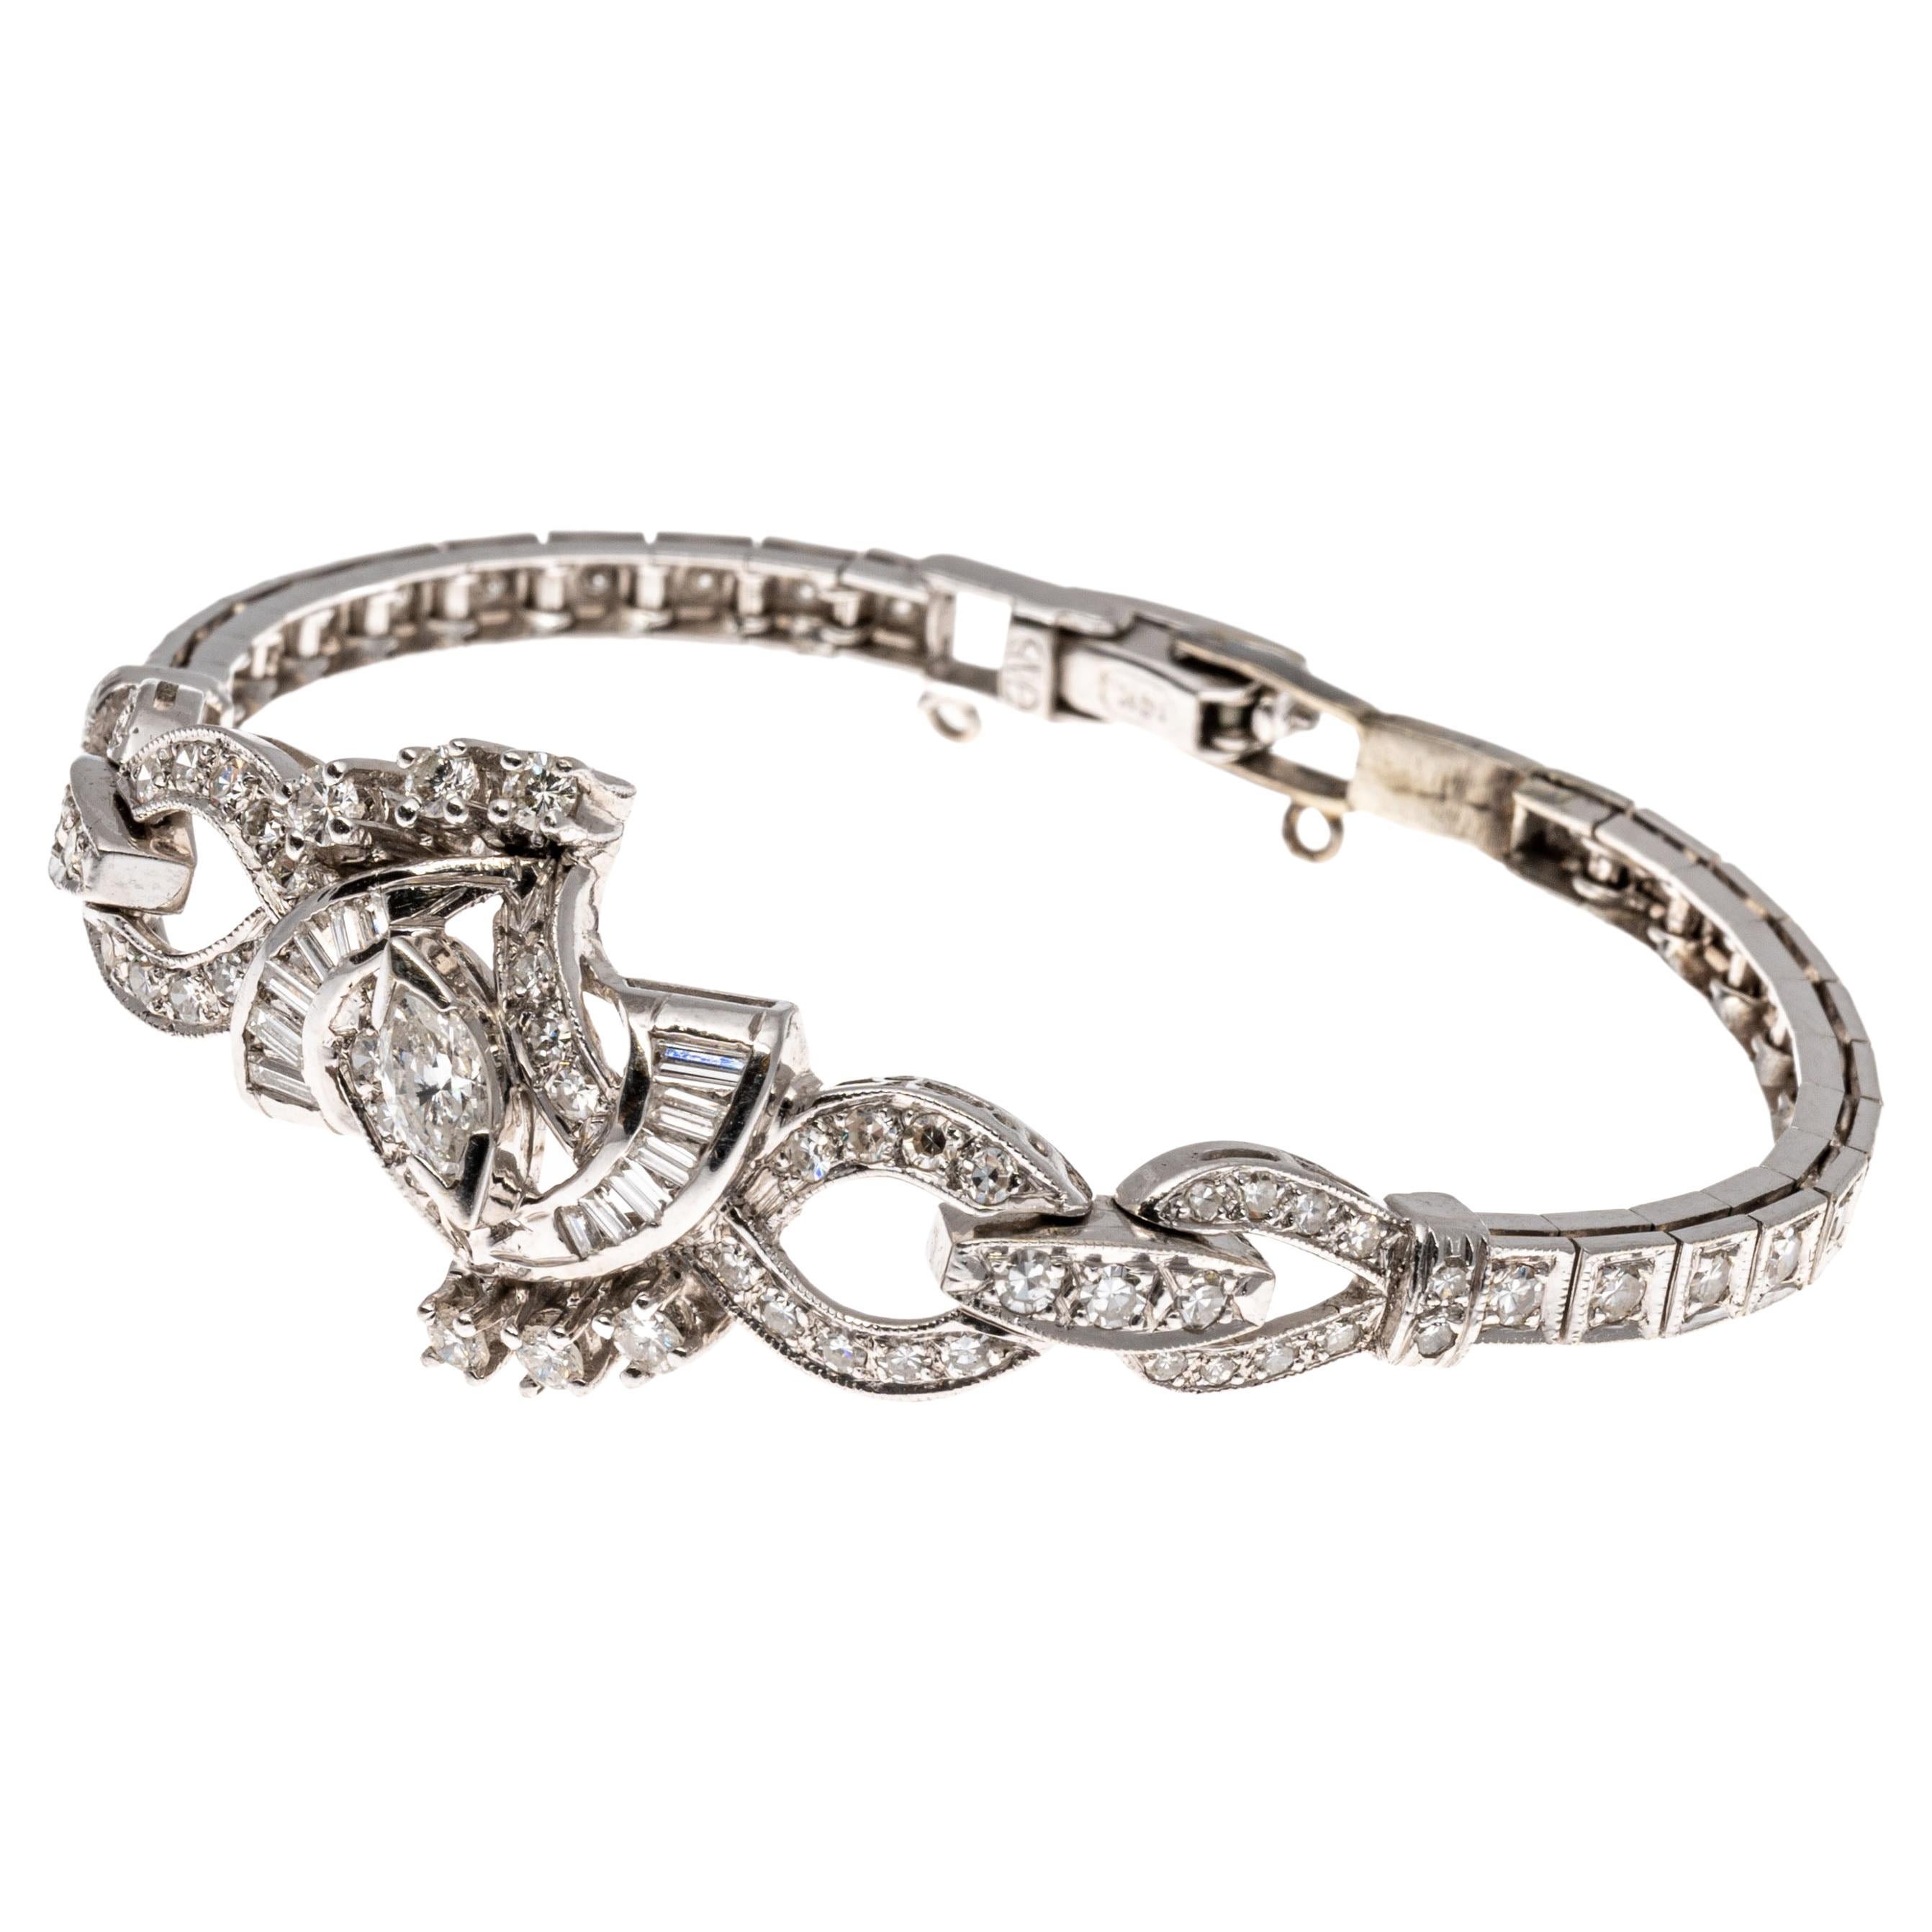 bracelet en 14k, App 1.15 TCW avec des diamants Marquise, Baguette et Ronds.
Ce superbe bracelet met en valeur une pierre centrale qui est un diamant marquise de forme brillante, d'environ 0,15 CTS, et serti de griffes en 